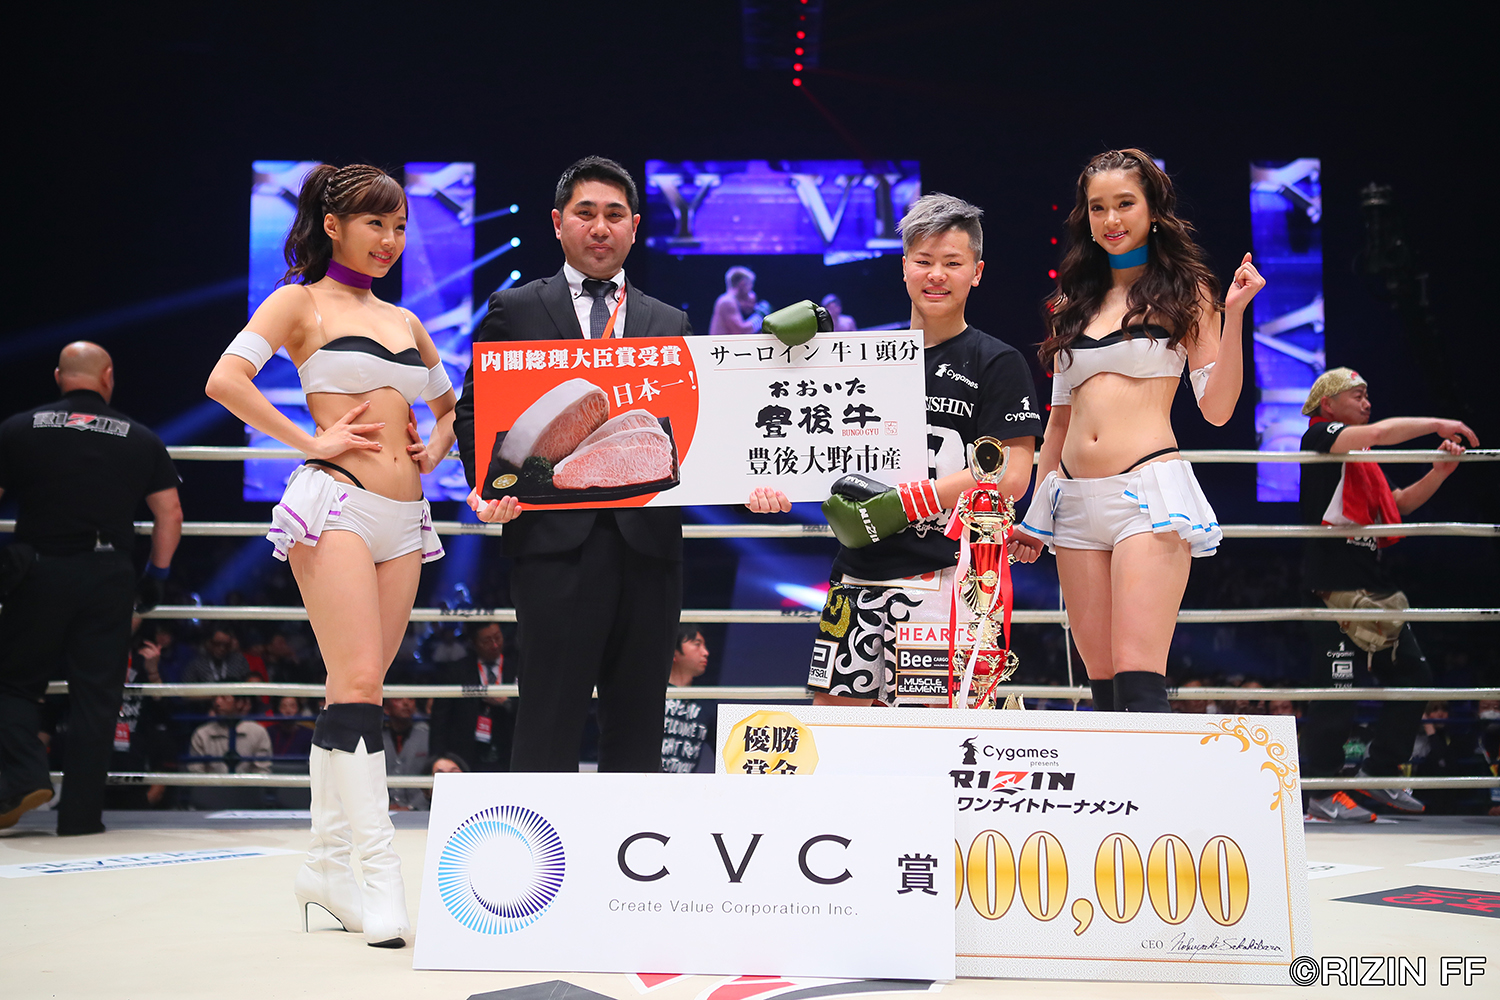 【試合結果】 那須川 天心 vs 藤田 大和 Cygames presents RIZIN KICK ワンナイトトーナメント 決勝戦